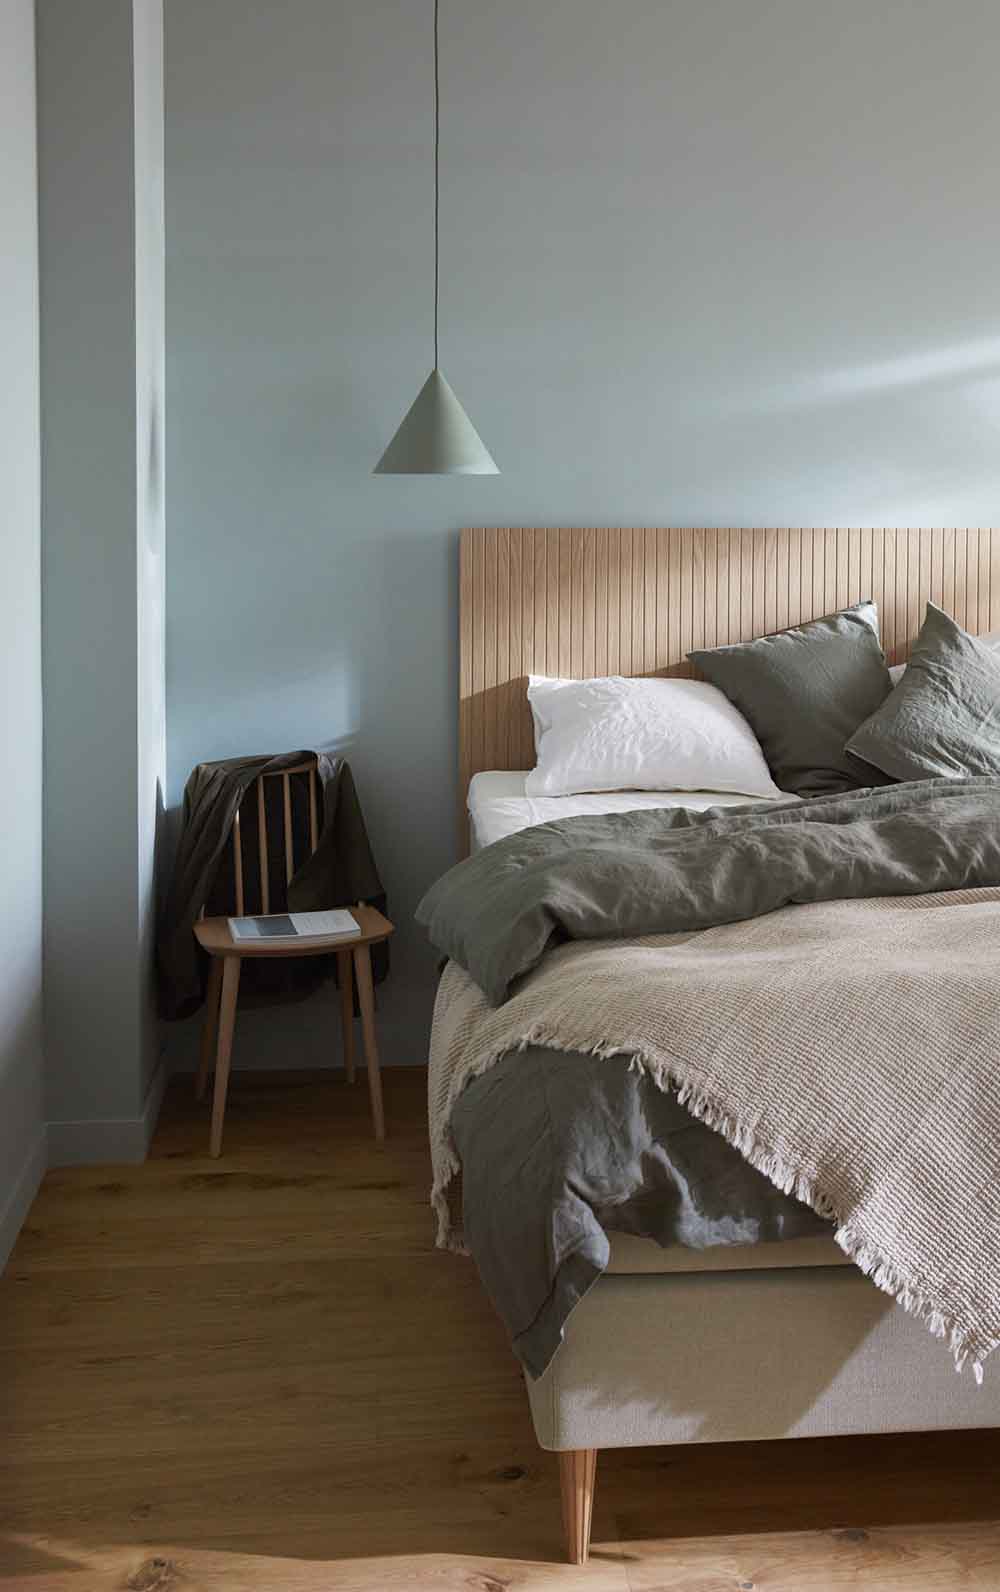 Hitta din nya säng hos oss i Örebro